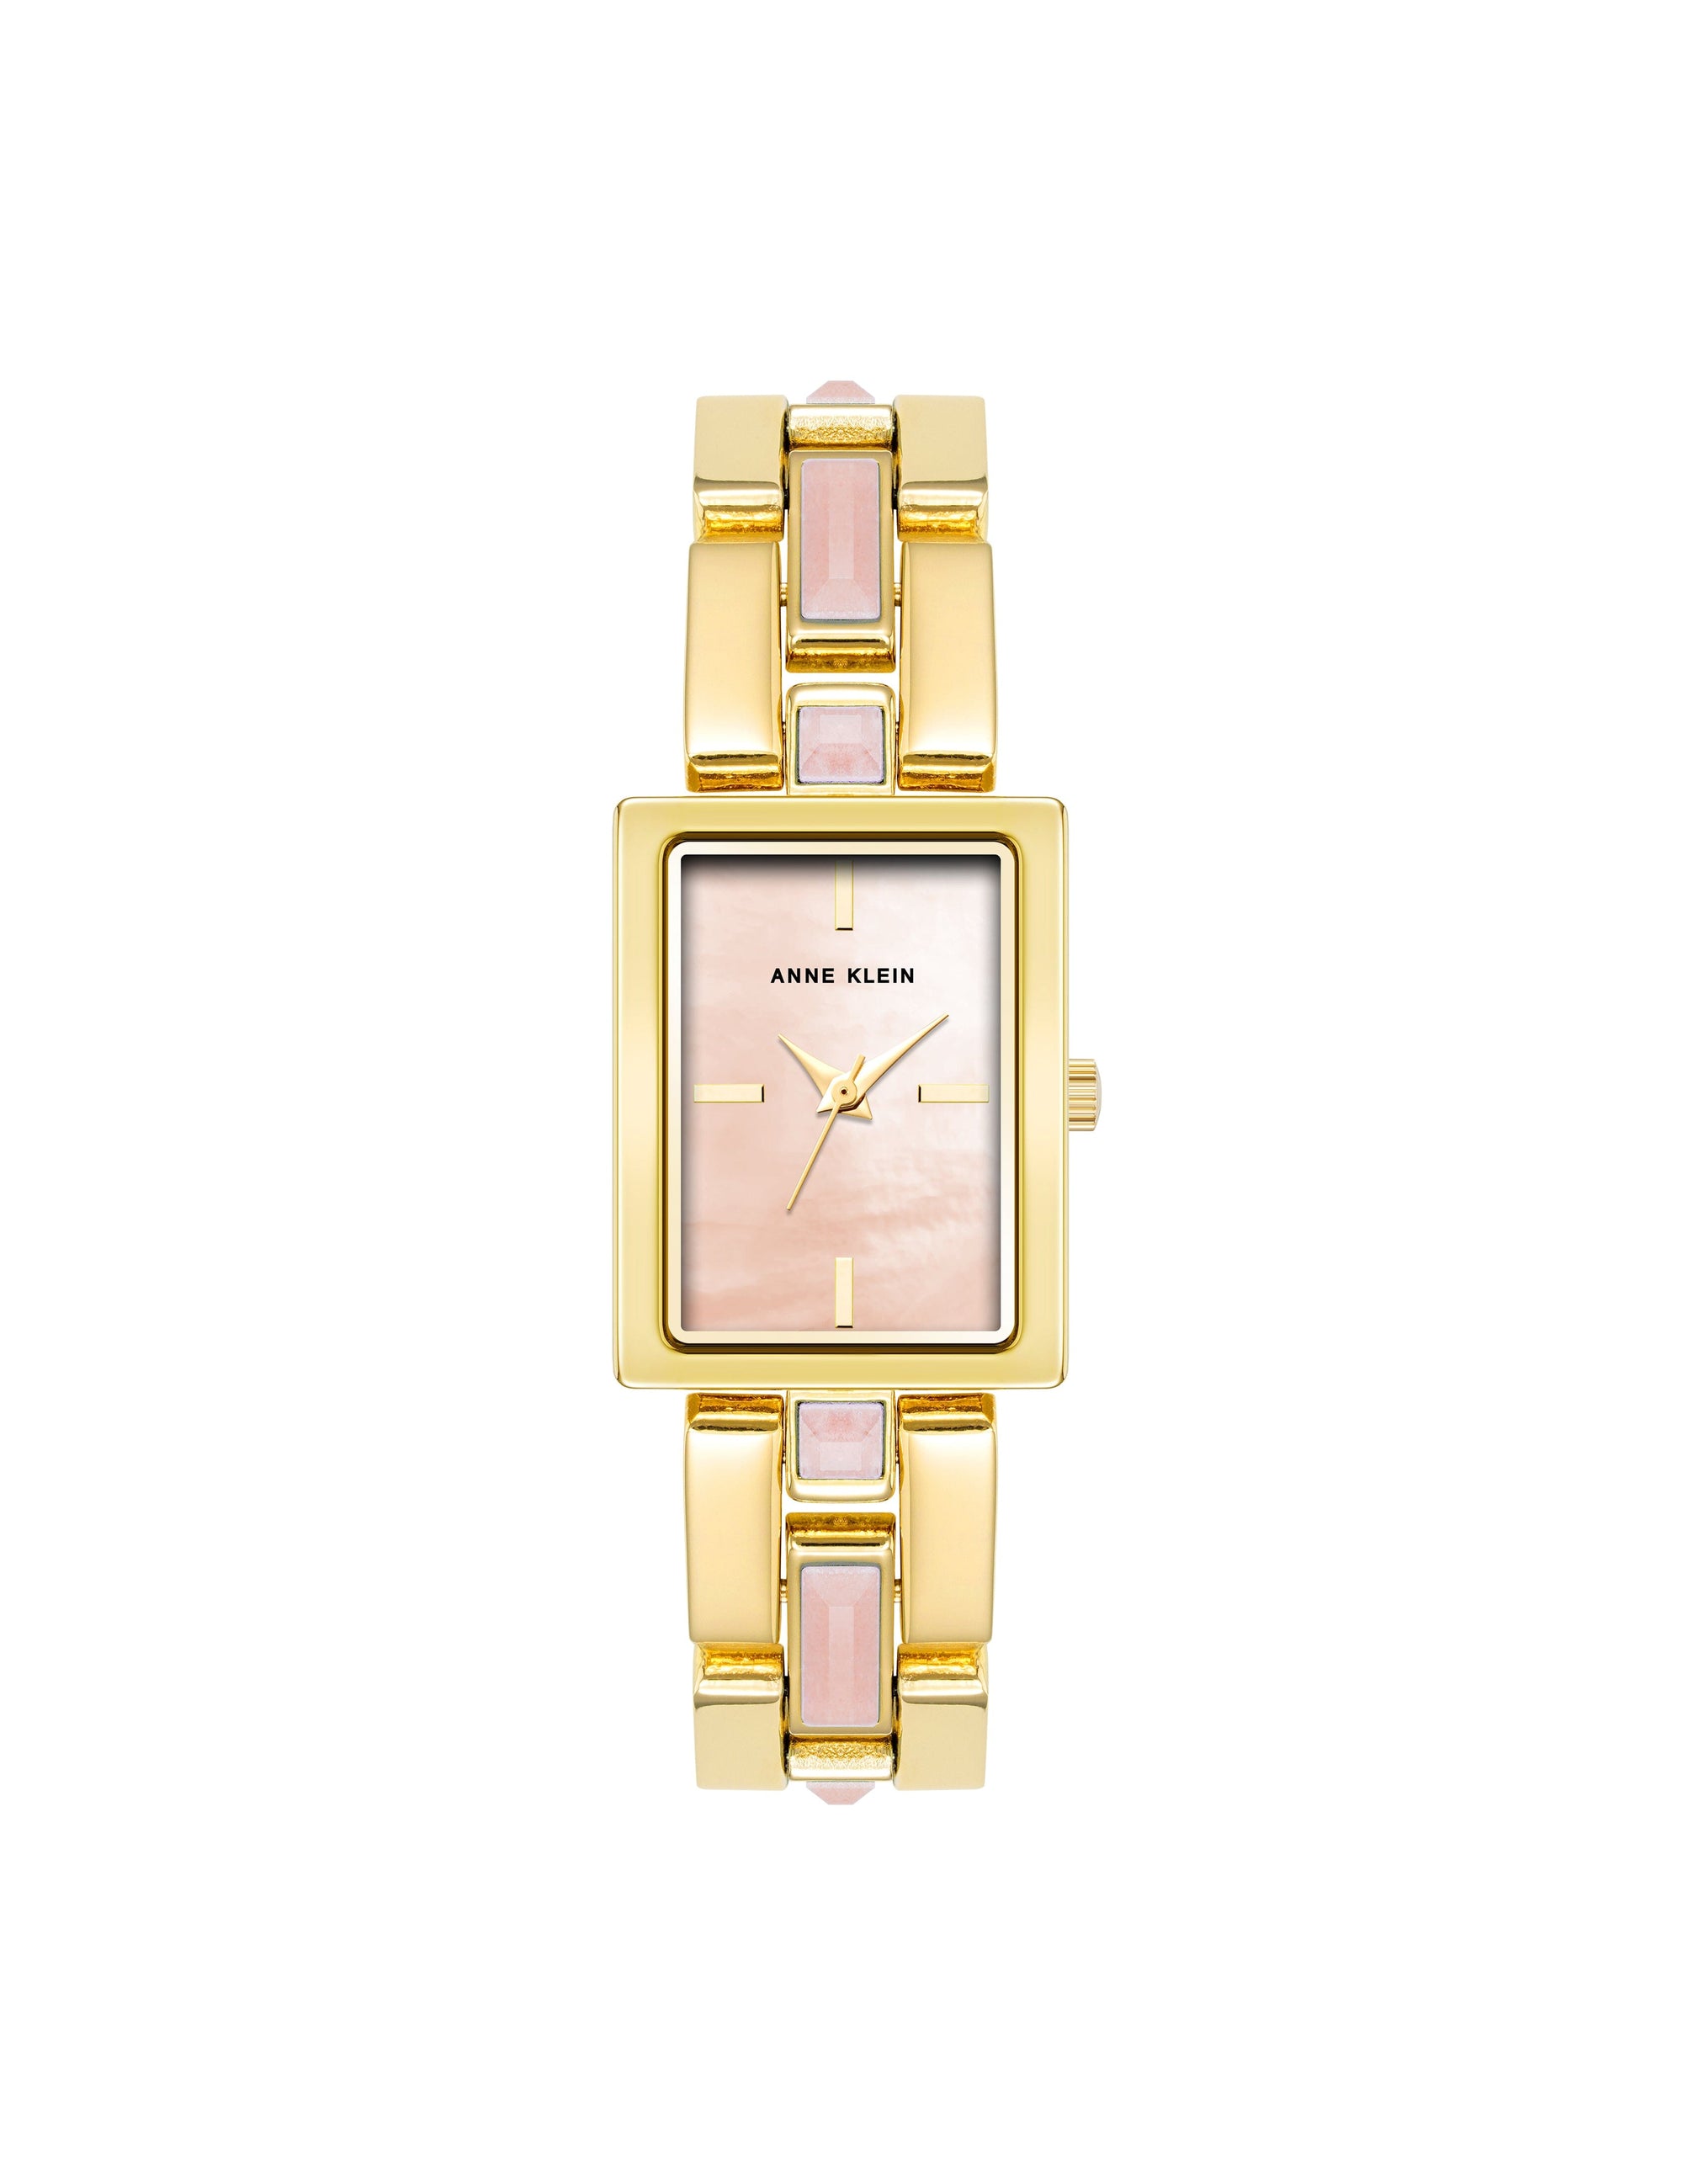 Anne Klein Rose quartz/Gold Gemstone Accented Bracelet Watch